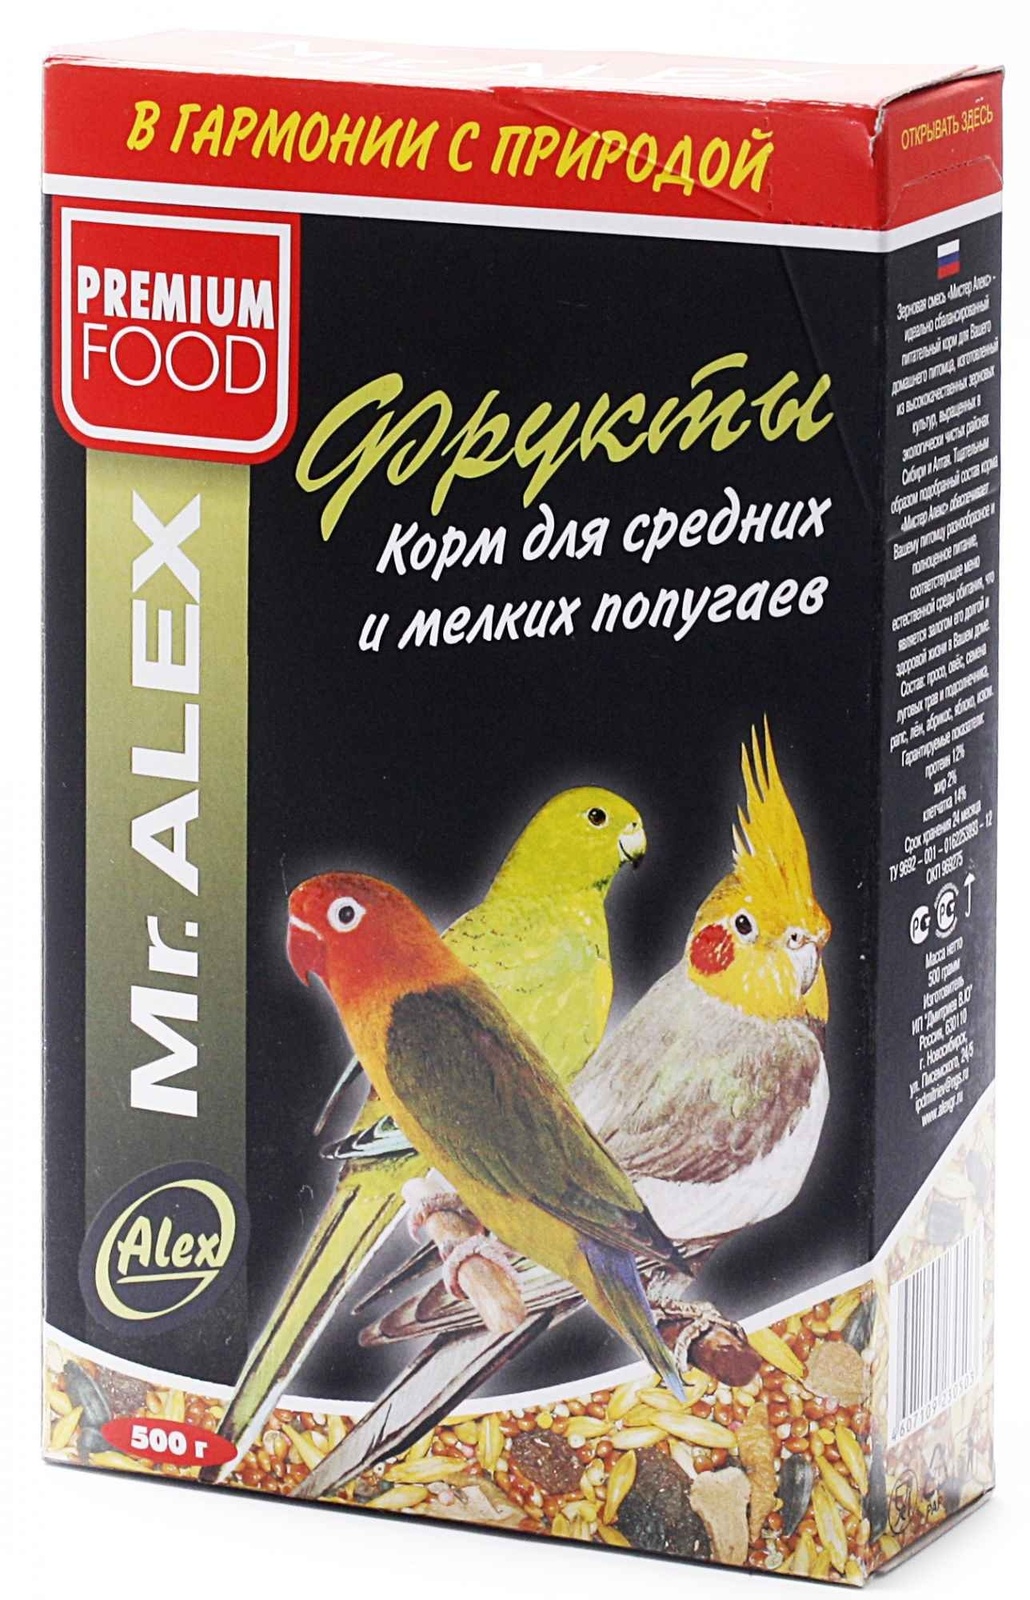 Mr.Alex Mr.Alex корм для средних и мелких попугаев Фрукты (500 г) mr alex mr alex корм для средних и мелких попугаев экзот 500 г